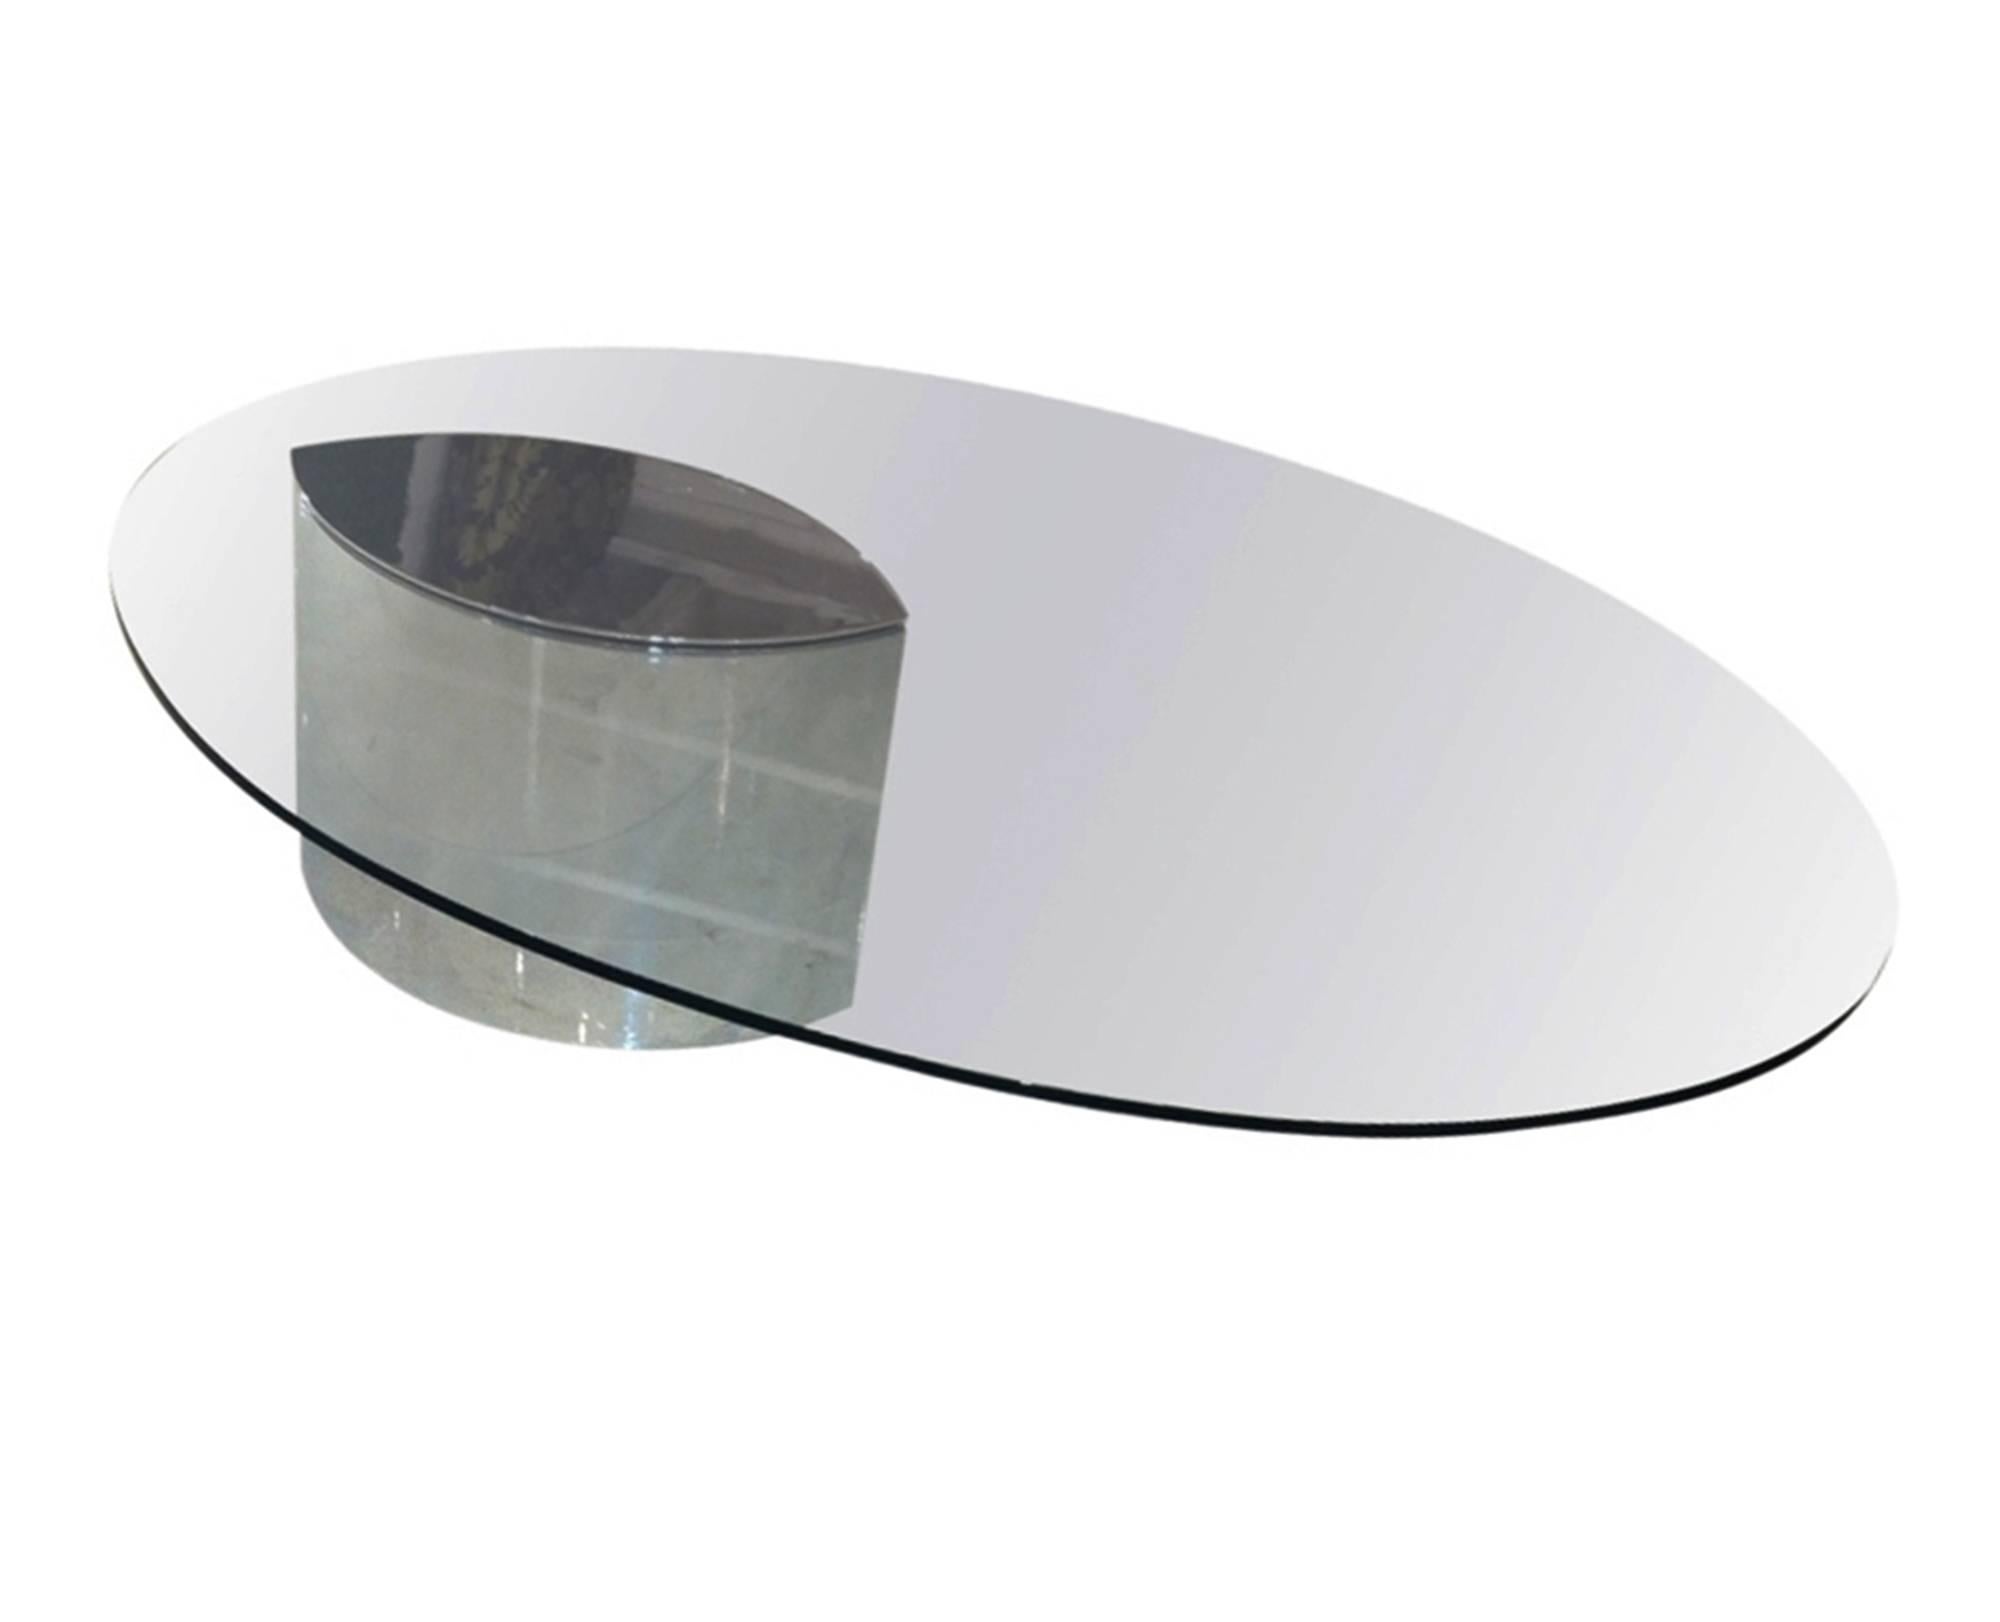 Conçue dans les années 1970, la table Lunario est une table en porte-à-faux vraiment unique.
Le plateau de la table est en verre ovale transparent poli avec un insert en acier inoxydable poli CAP qui repose sur une base en acier inoxydable. Les